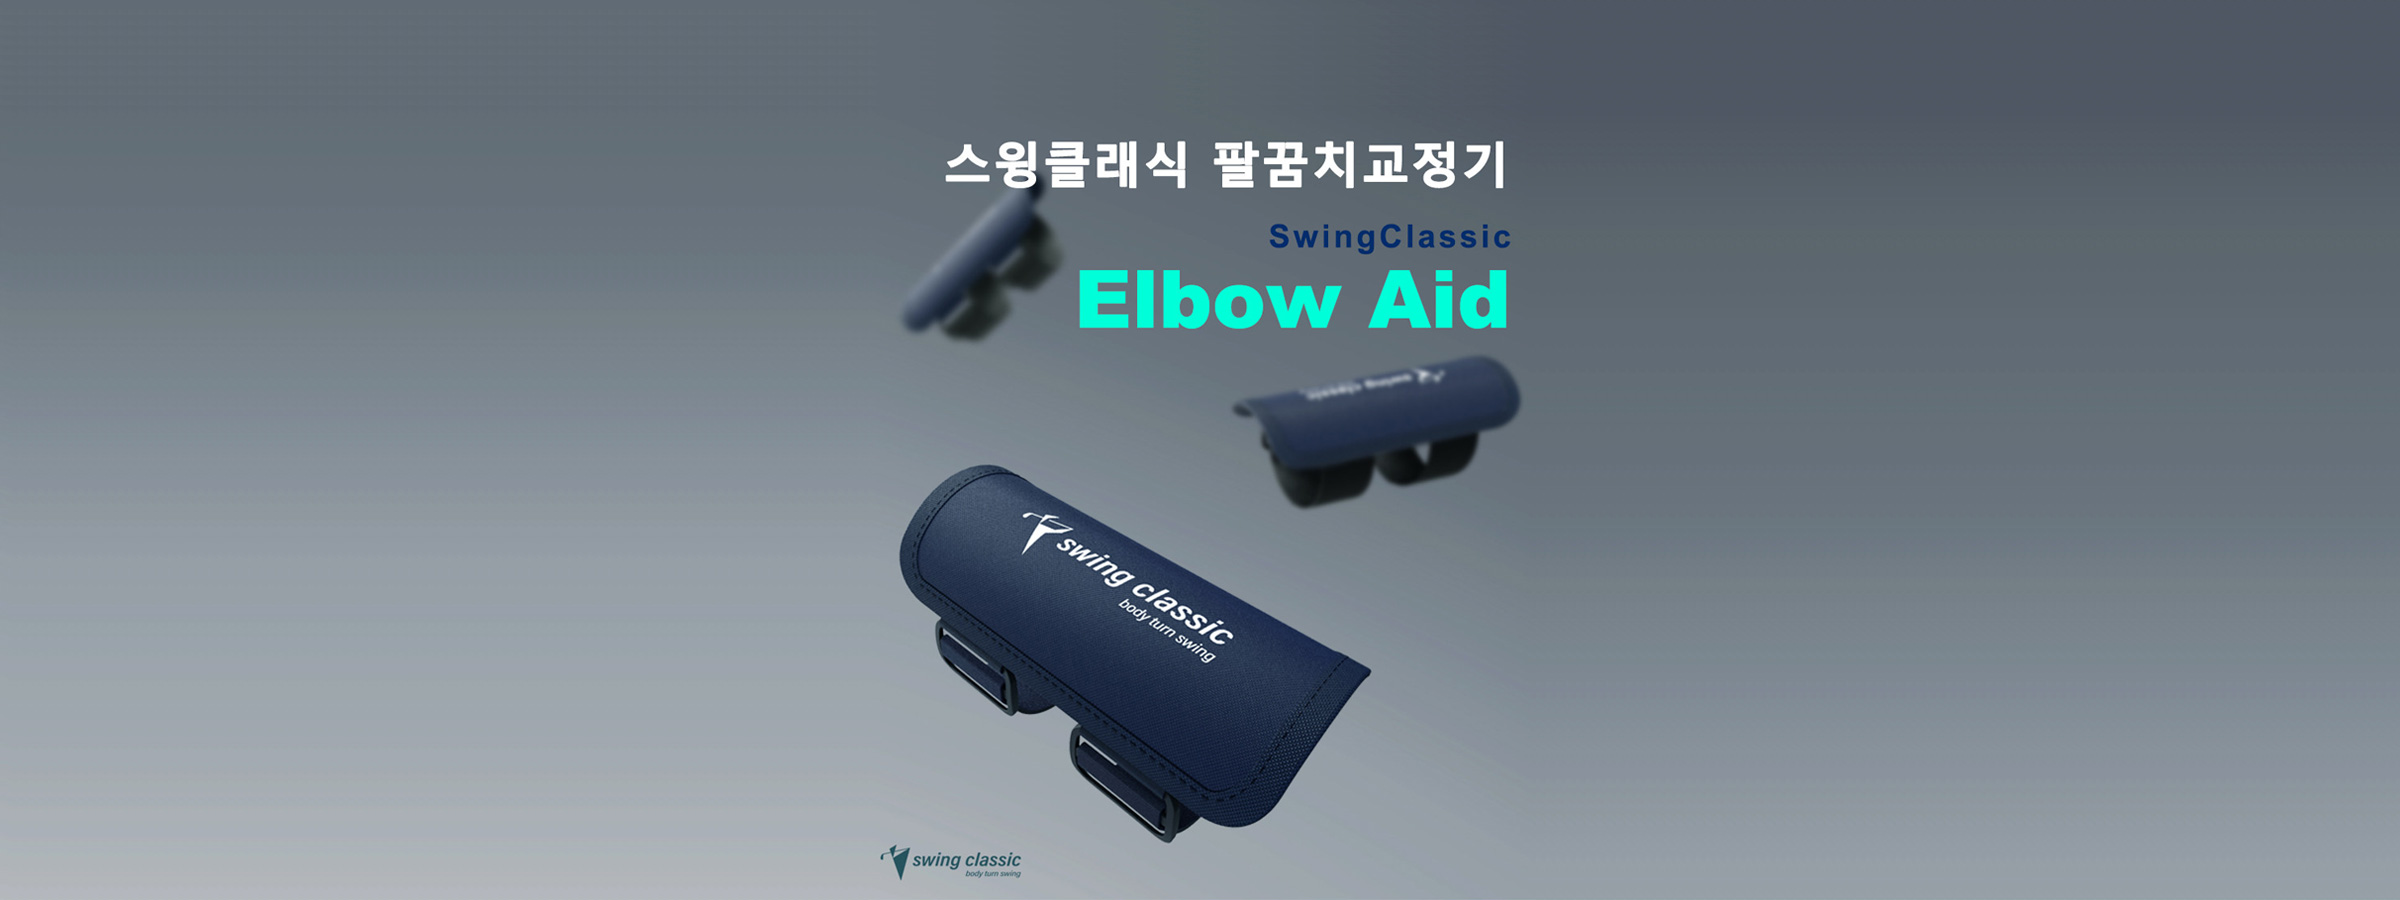 <p>elbow aid</p>
